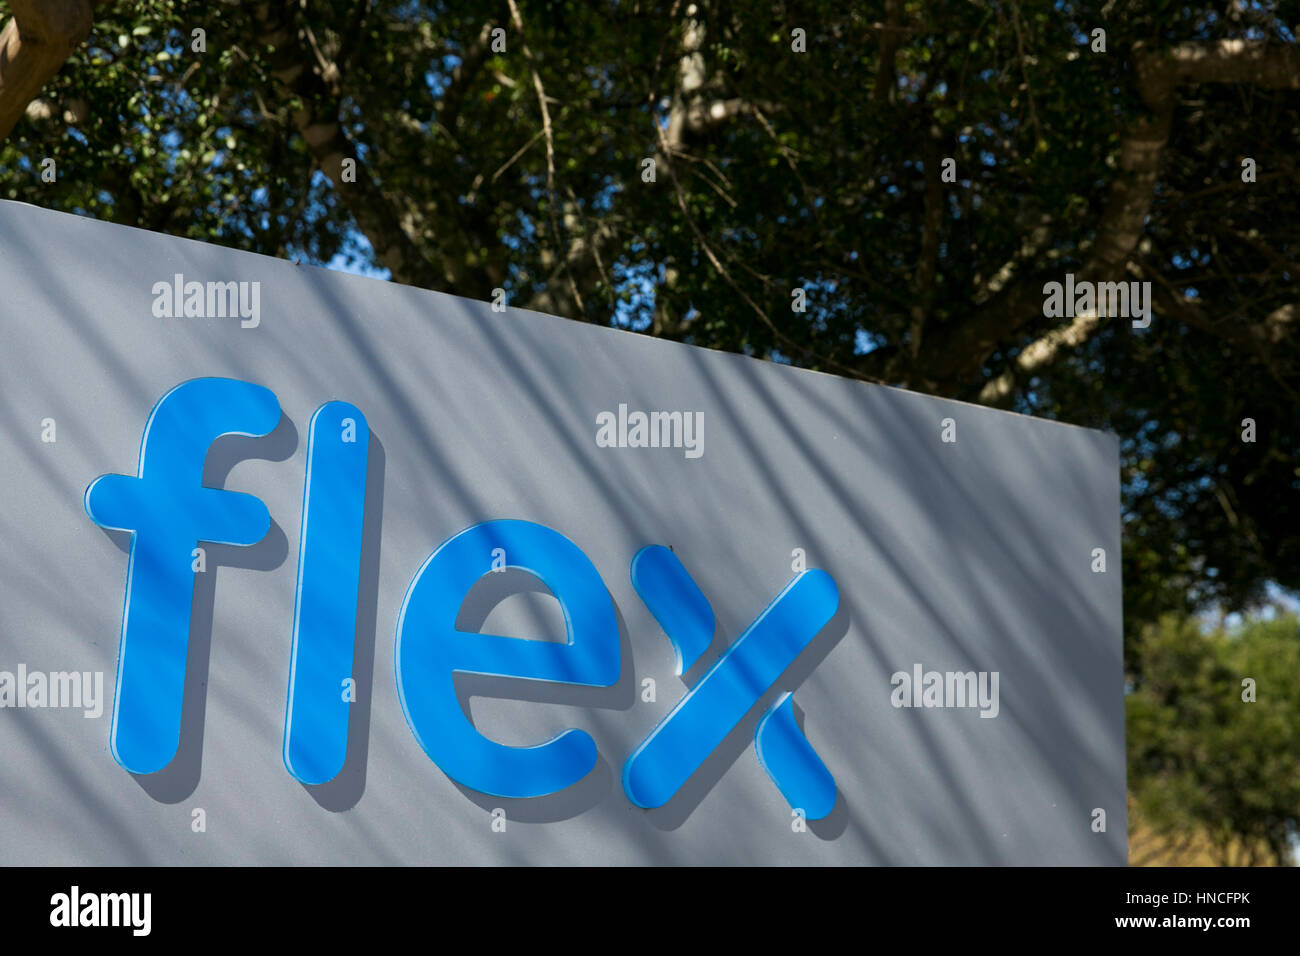 Un logotipo cartel fuera de una instalación ocupada por Flex Ltd., en Austin, Texas, el 28 de enero de 2017. Foto de stock